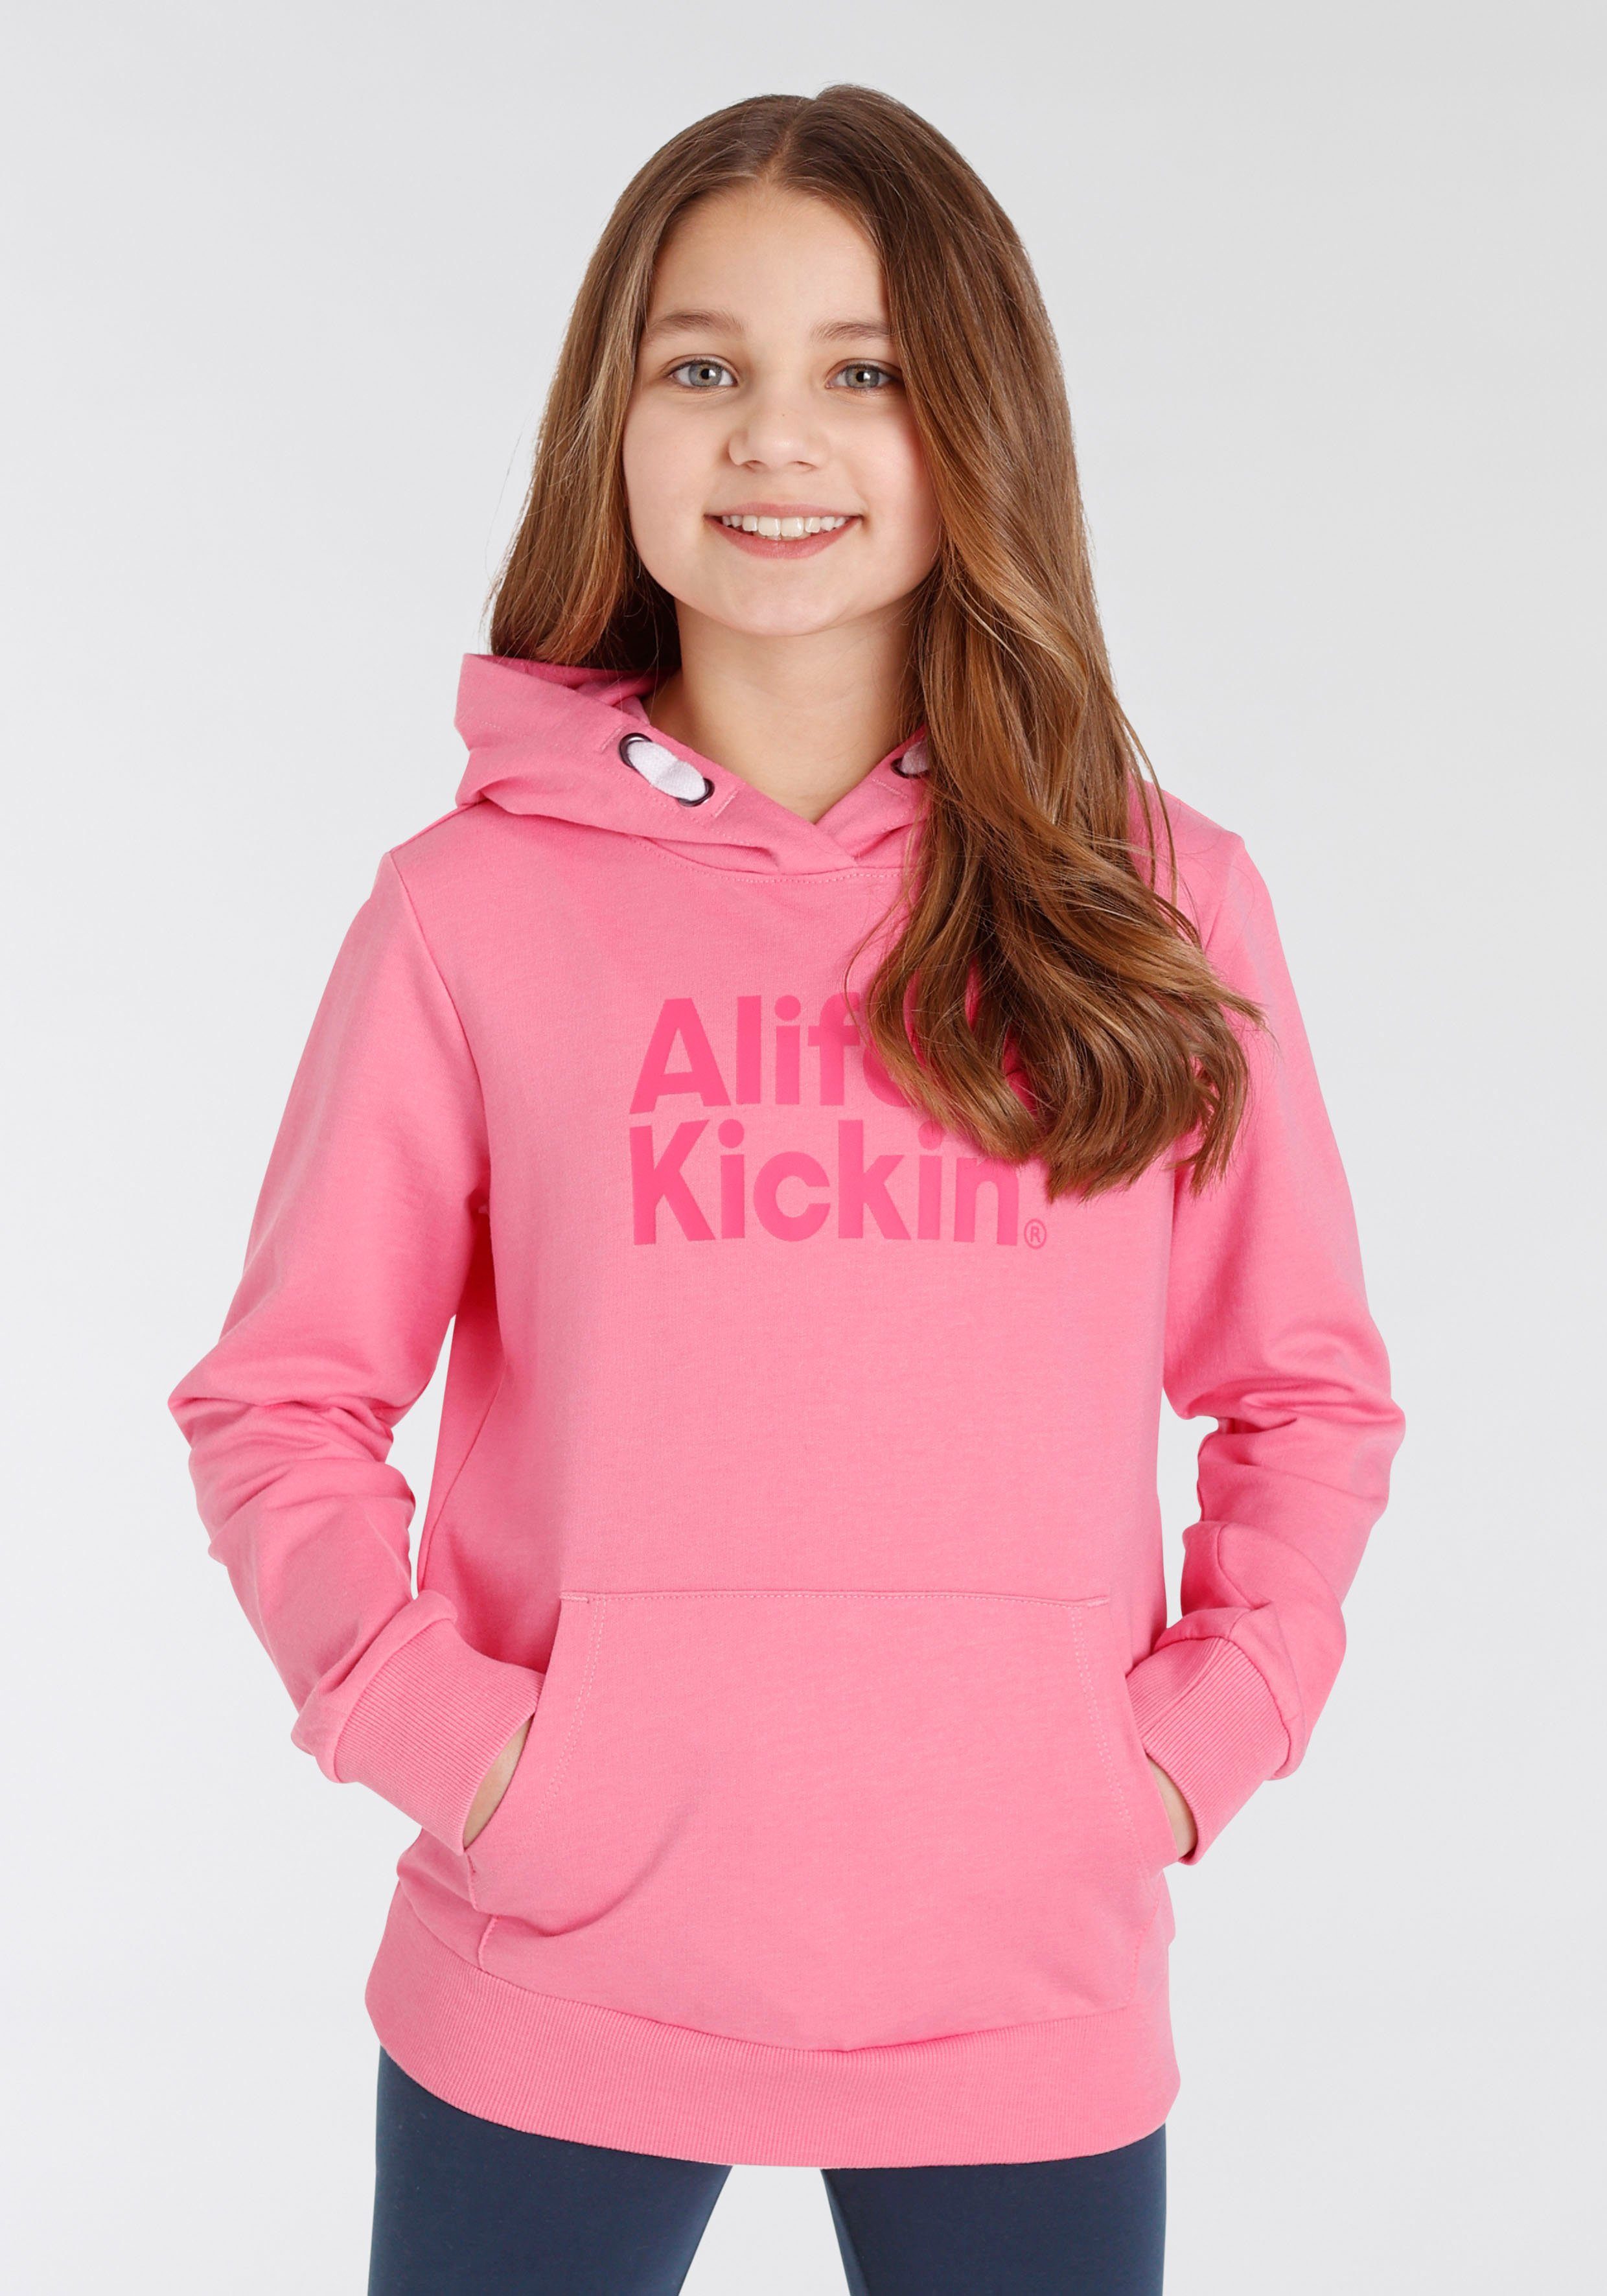 mit Druck & MARKE! Kickin NEUE Kickin Alife Alife Logo & Kapuzensweatshirt für Kids.